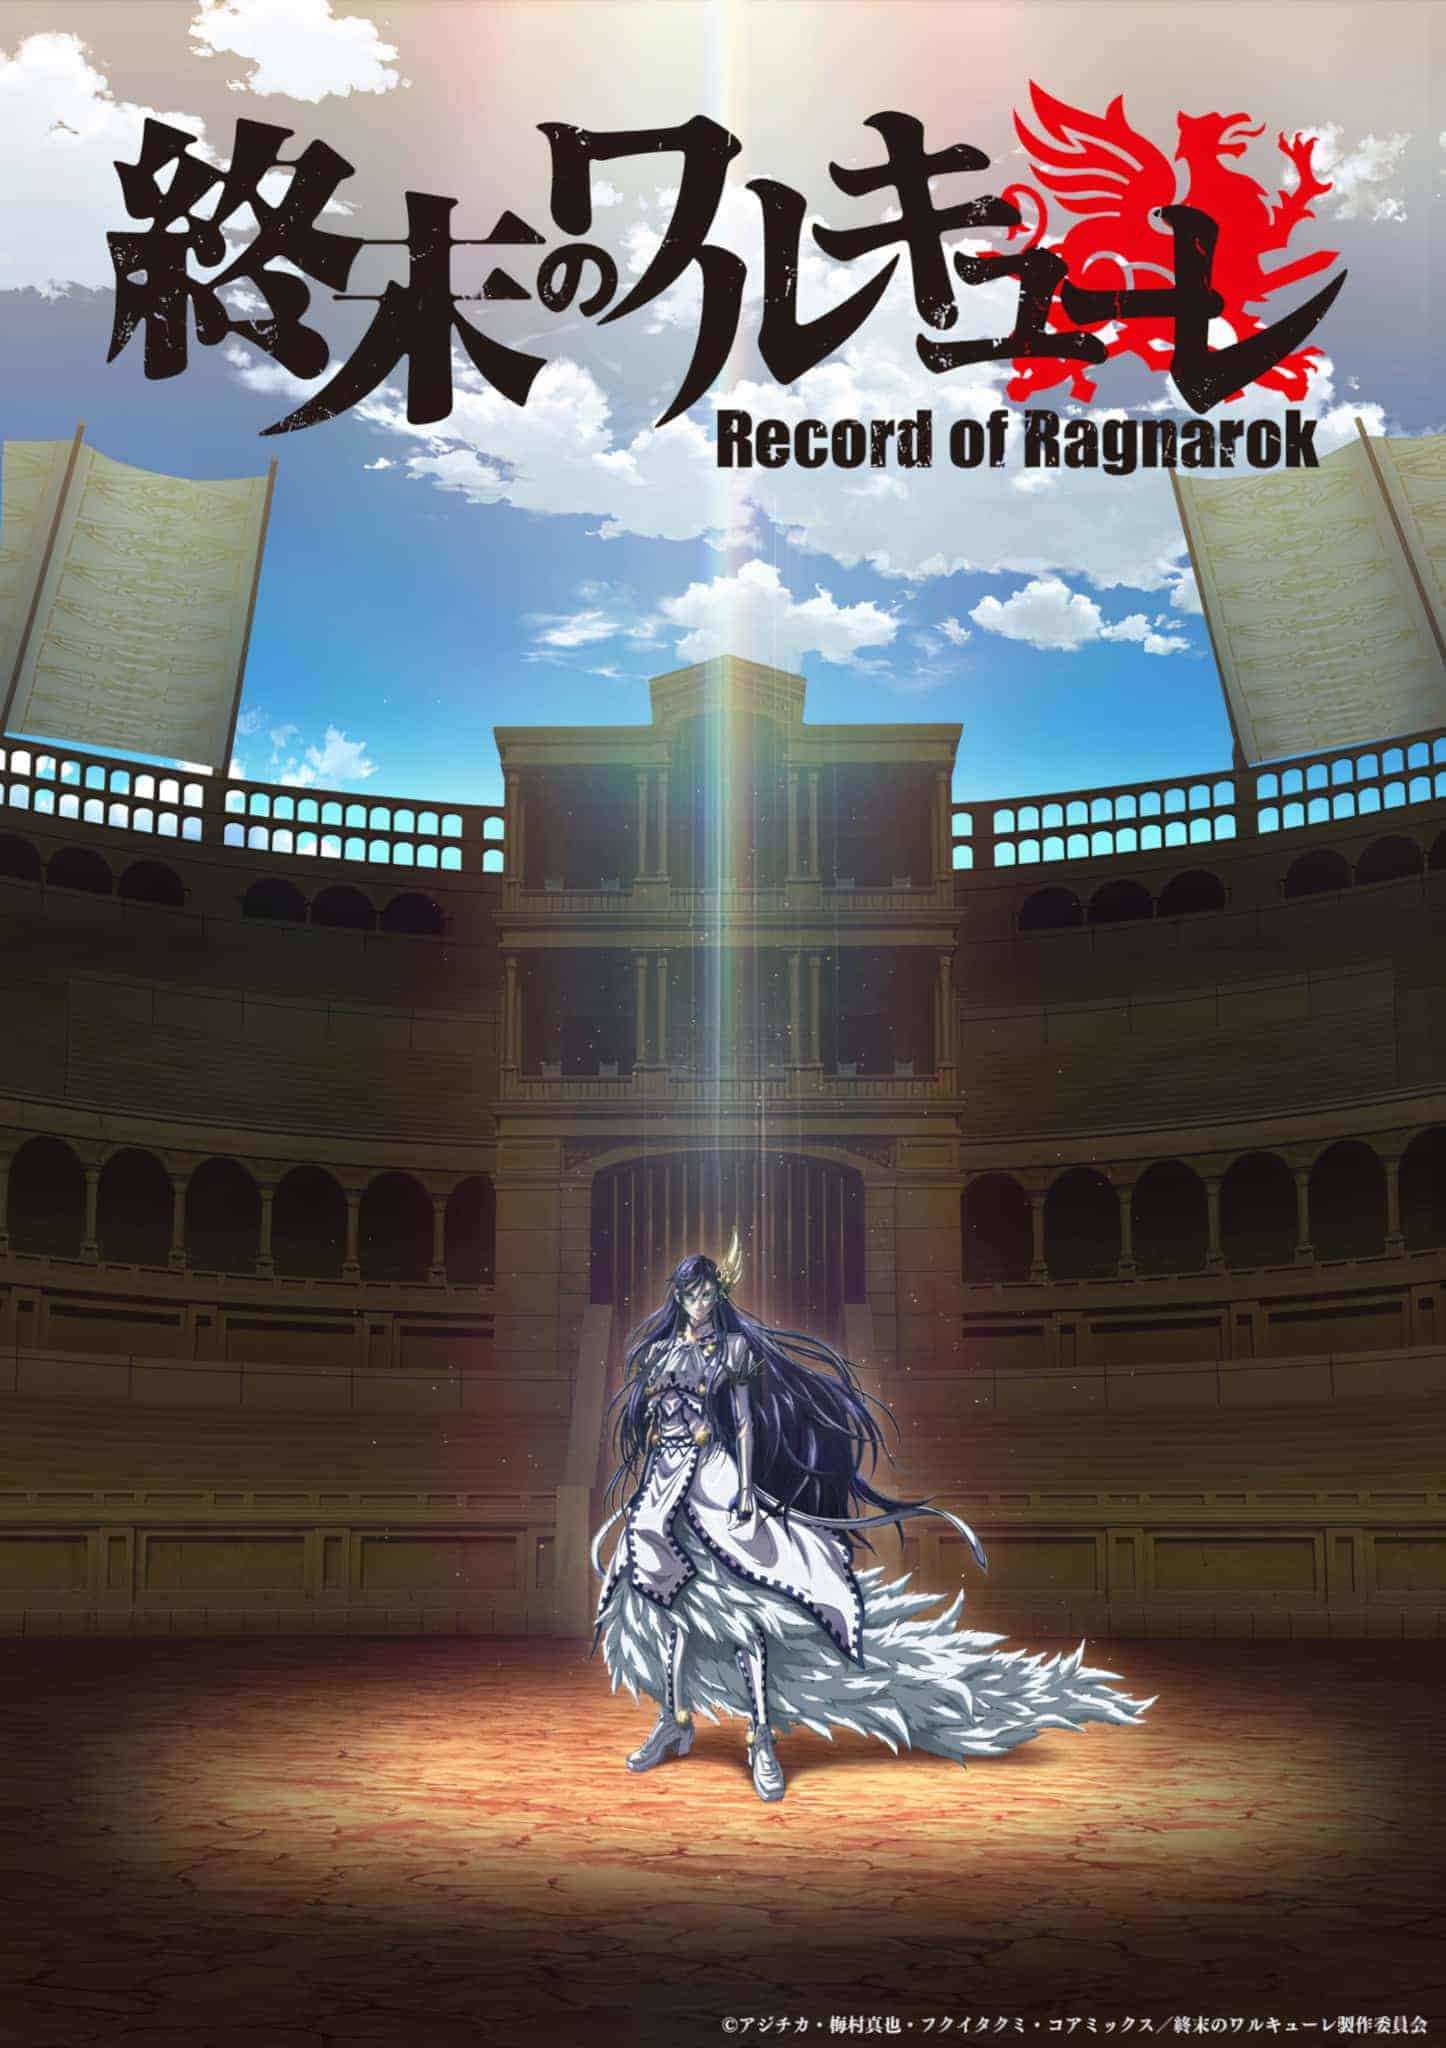 Annonce de Record of Ragnarok parmi les animes du printemps 2021